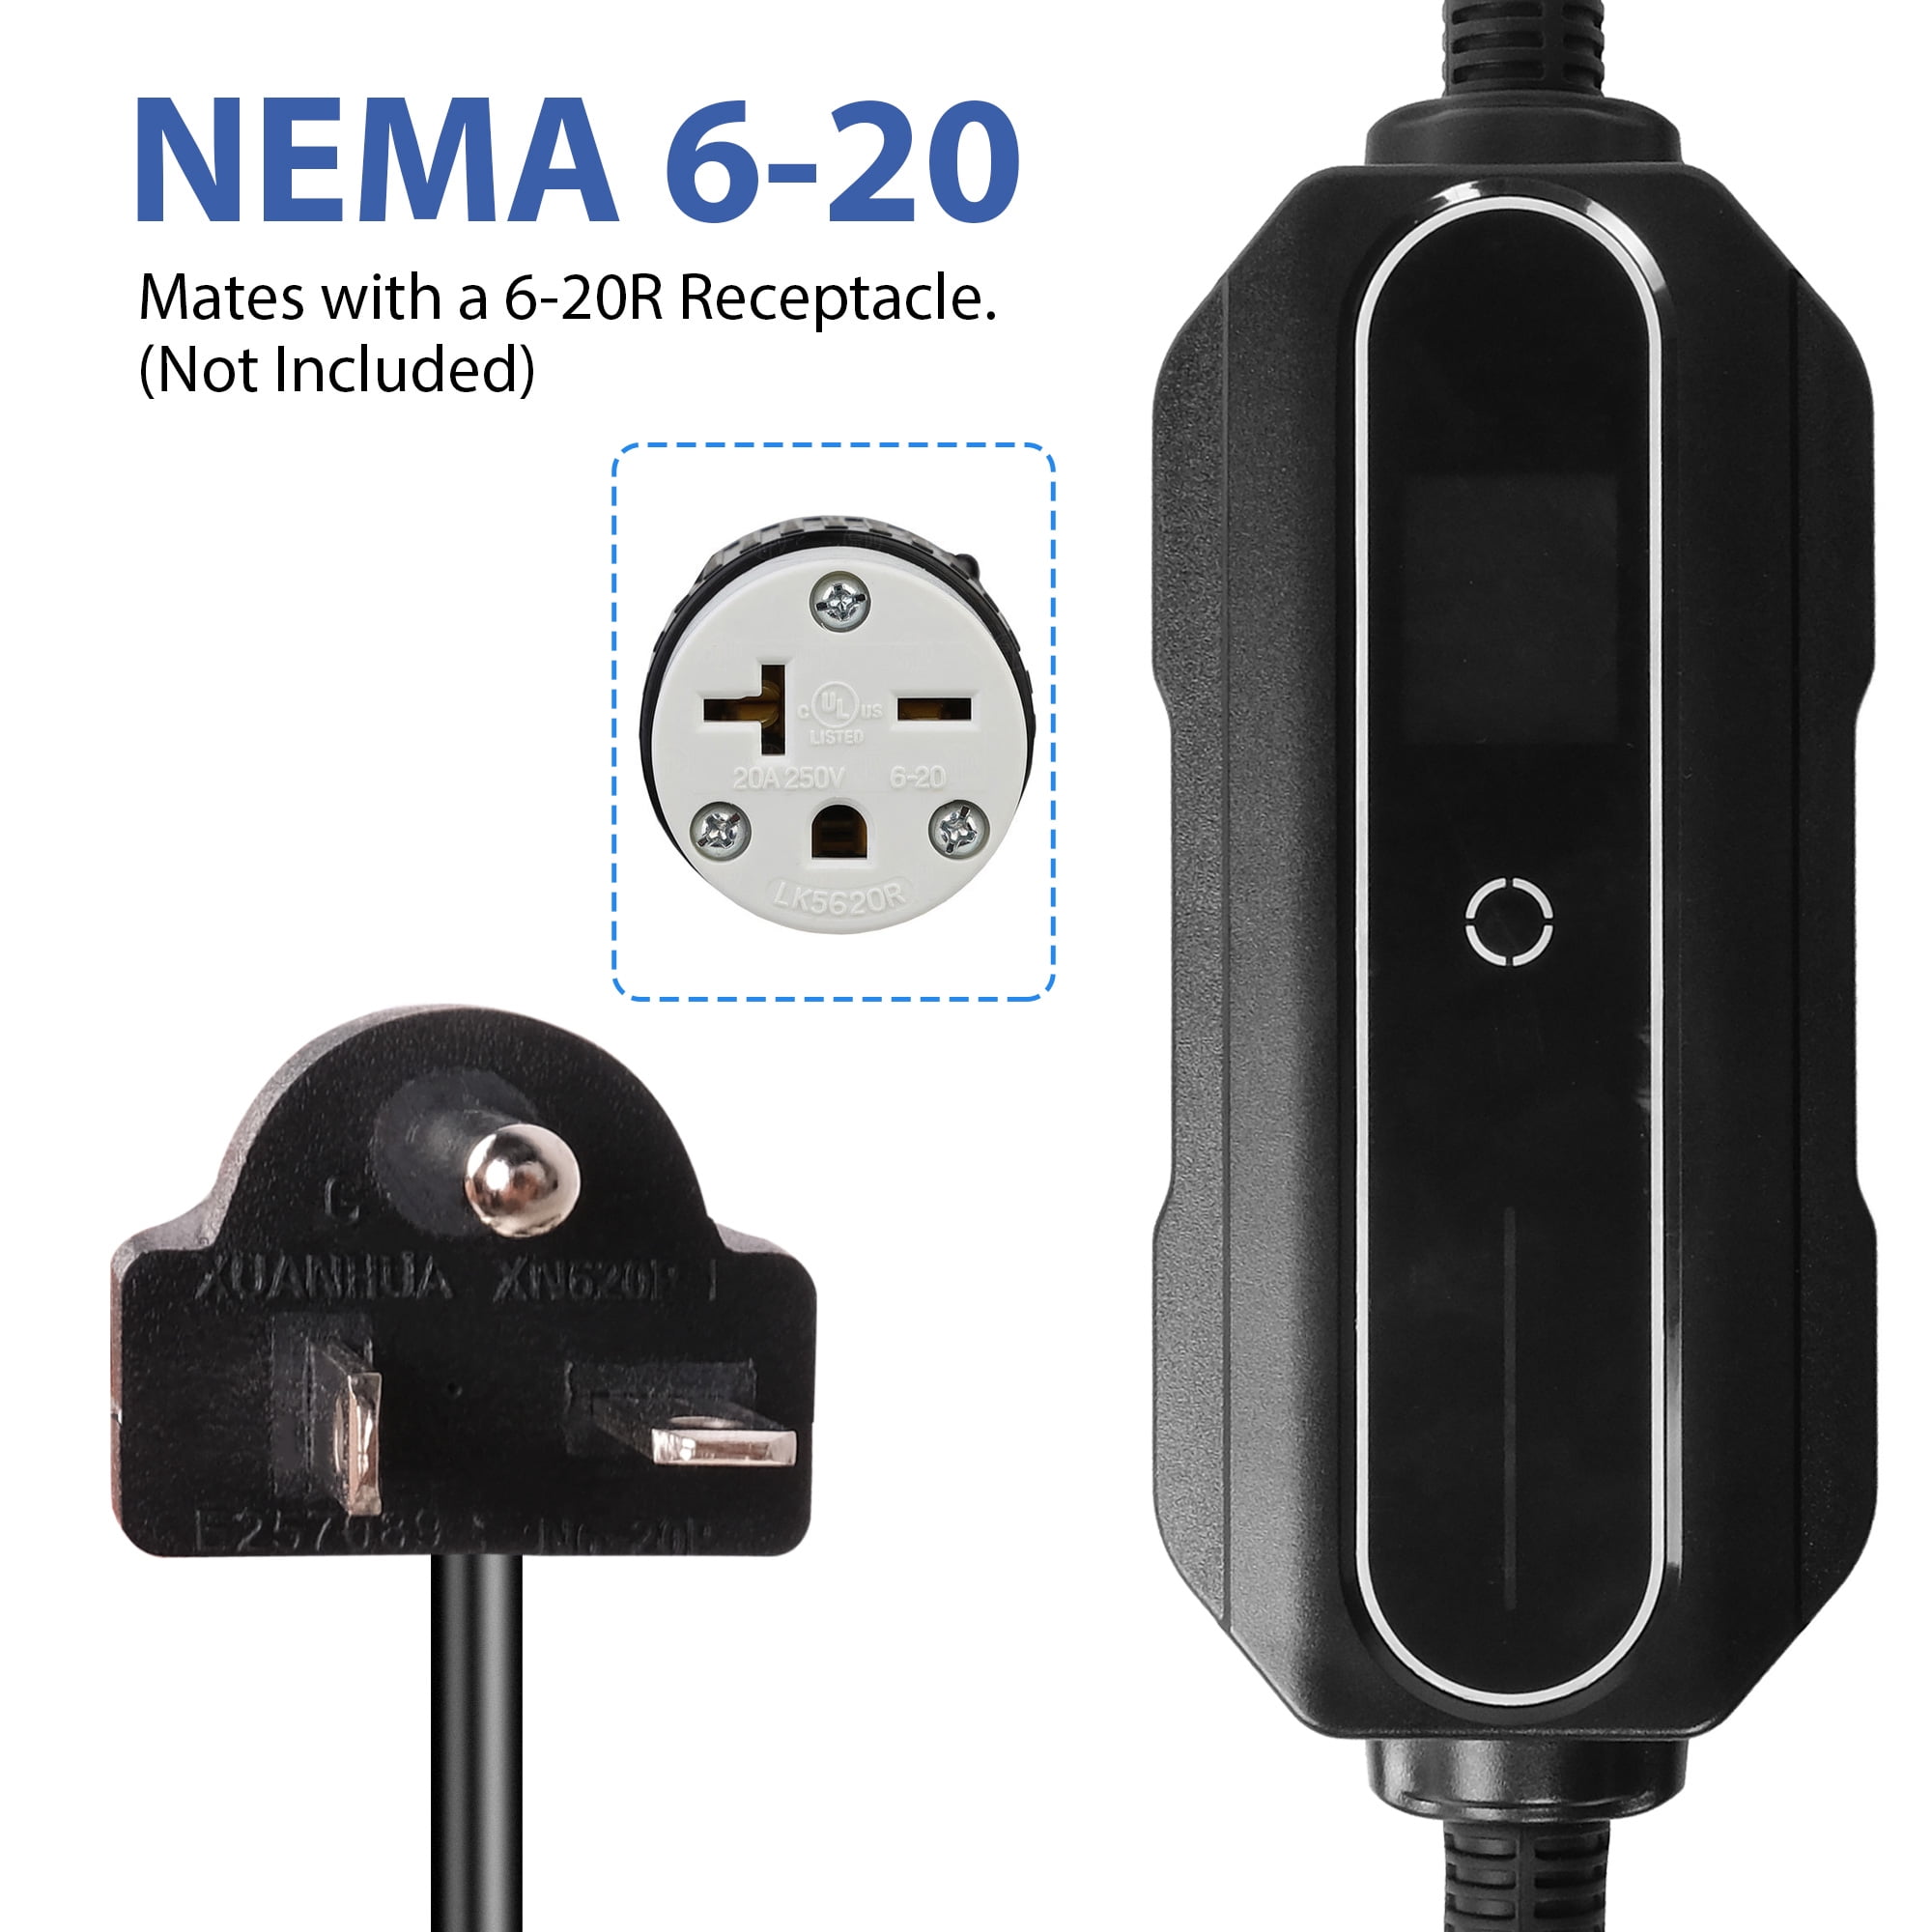 Chargeur de véhicule électrique portable niveau 1+2, 16 a 120 V/240 V,  chargeur de véhicule électrique avec câble de charge 21 FT prise NEMA 6-20  adaptateur NEMA 5-15, chargeur de véhicule électrique